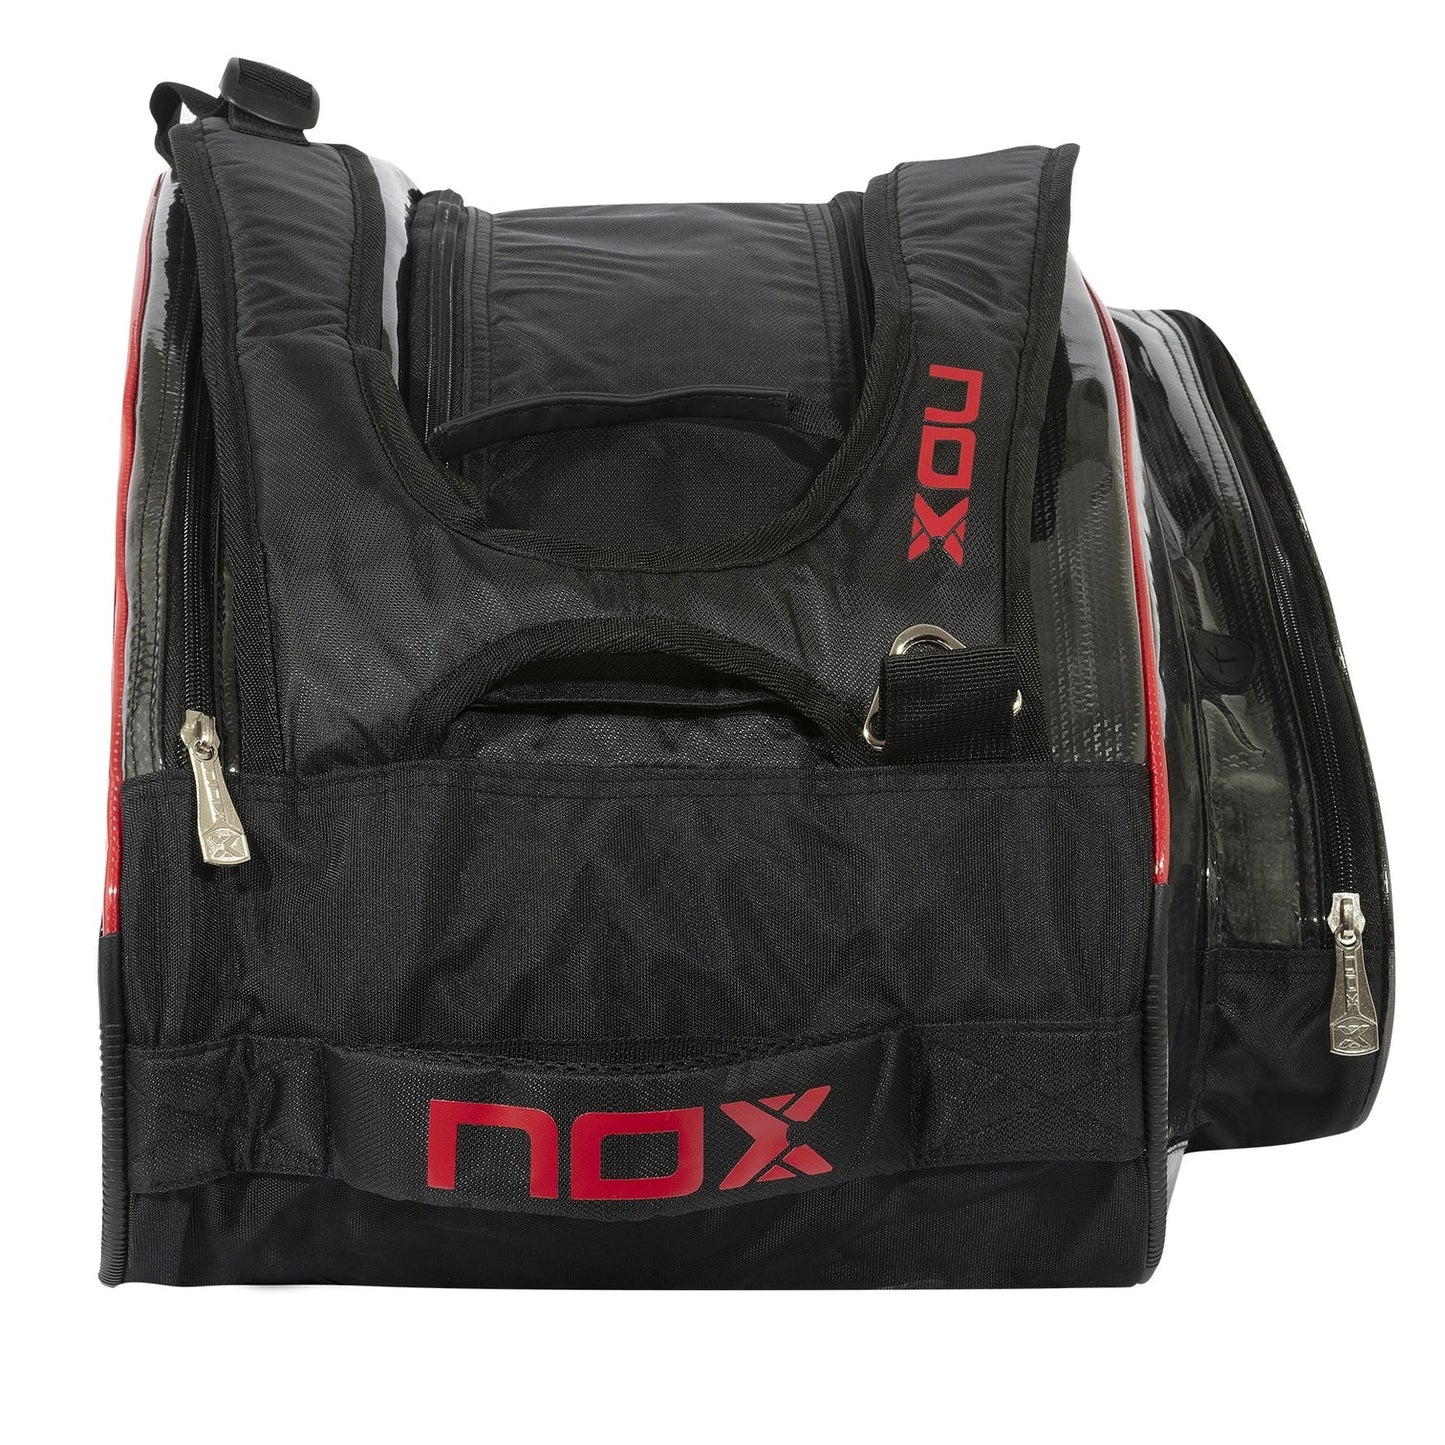 NOX PADEL BAG - AT10 TEAM BLACK RED LOGO